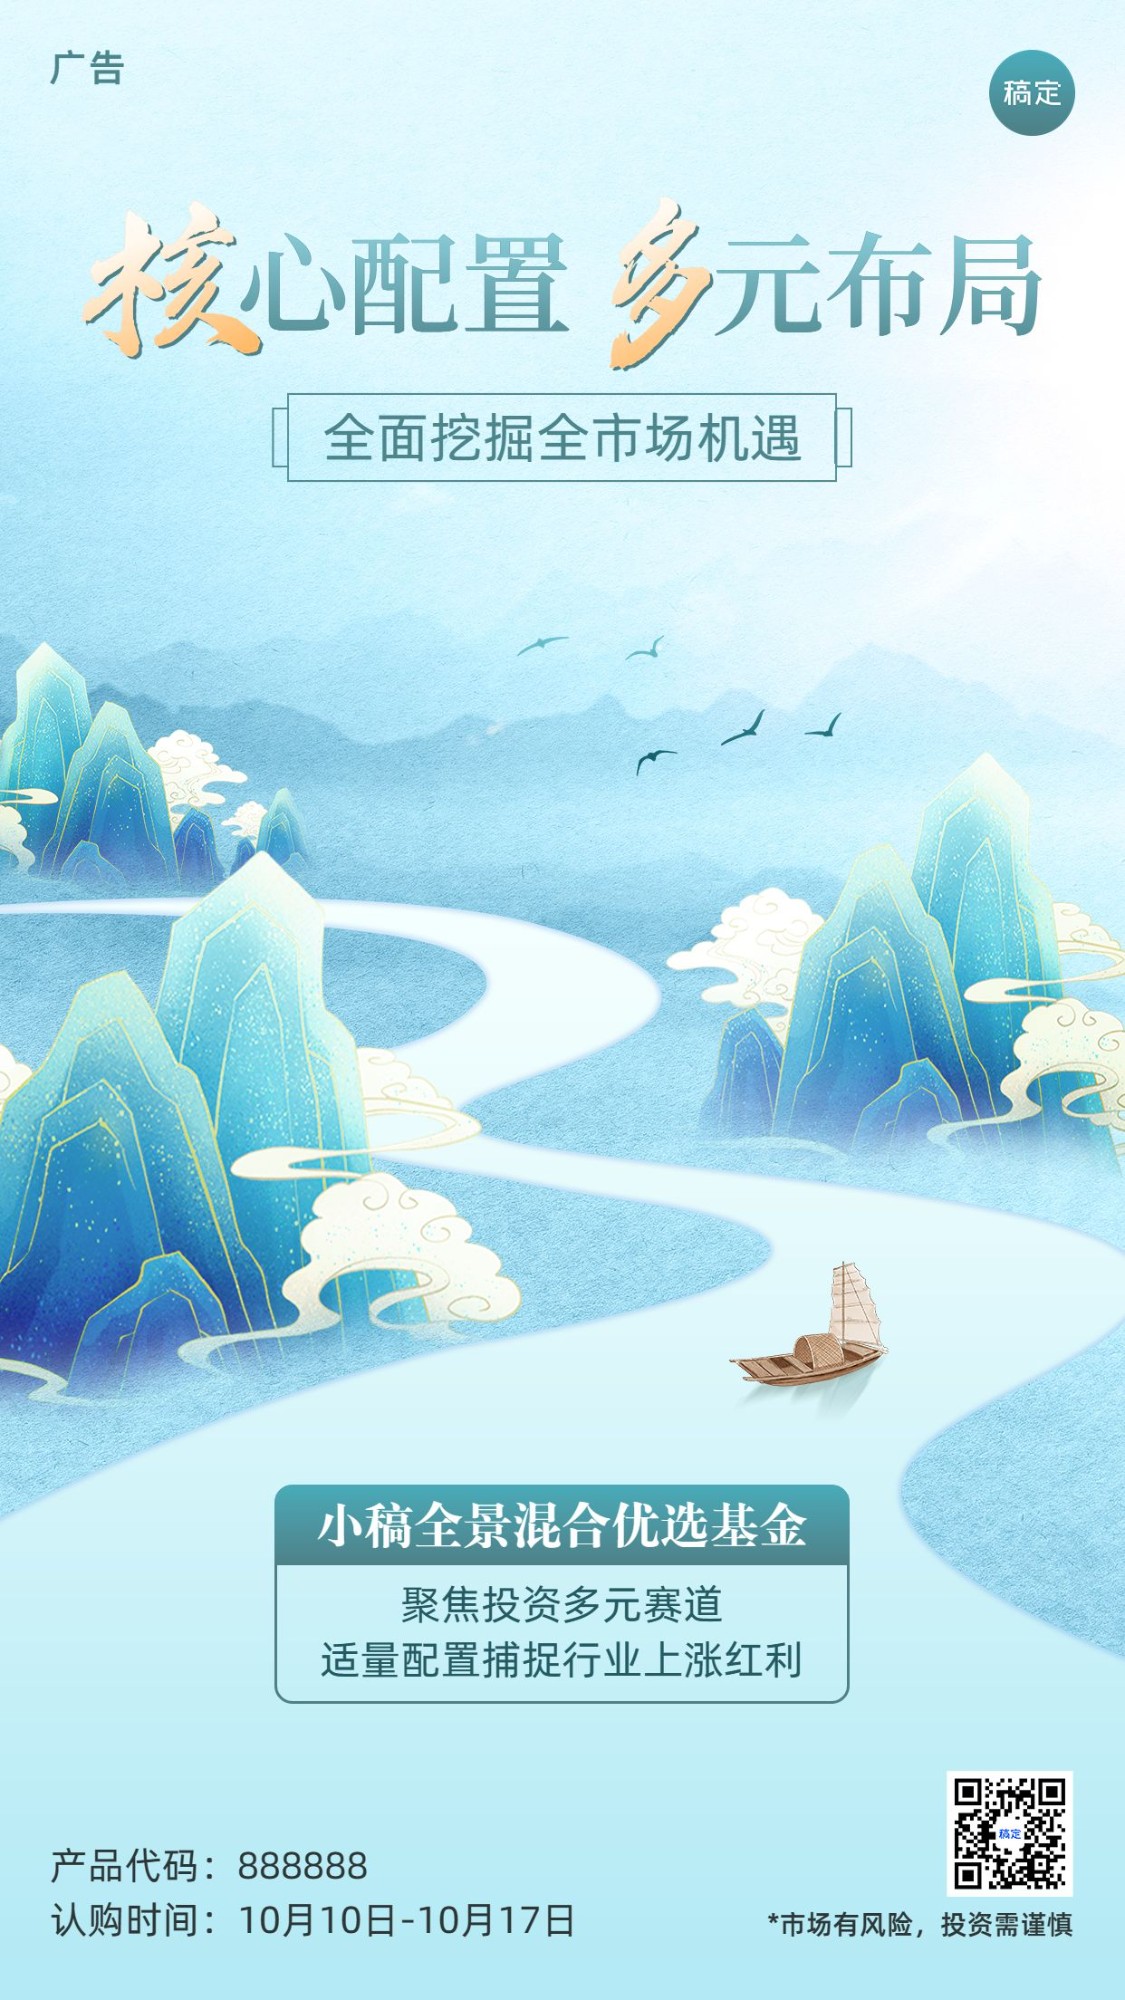 金融基金产品发售营销宣传水墨中国风手机海报